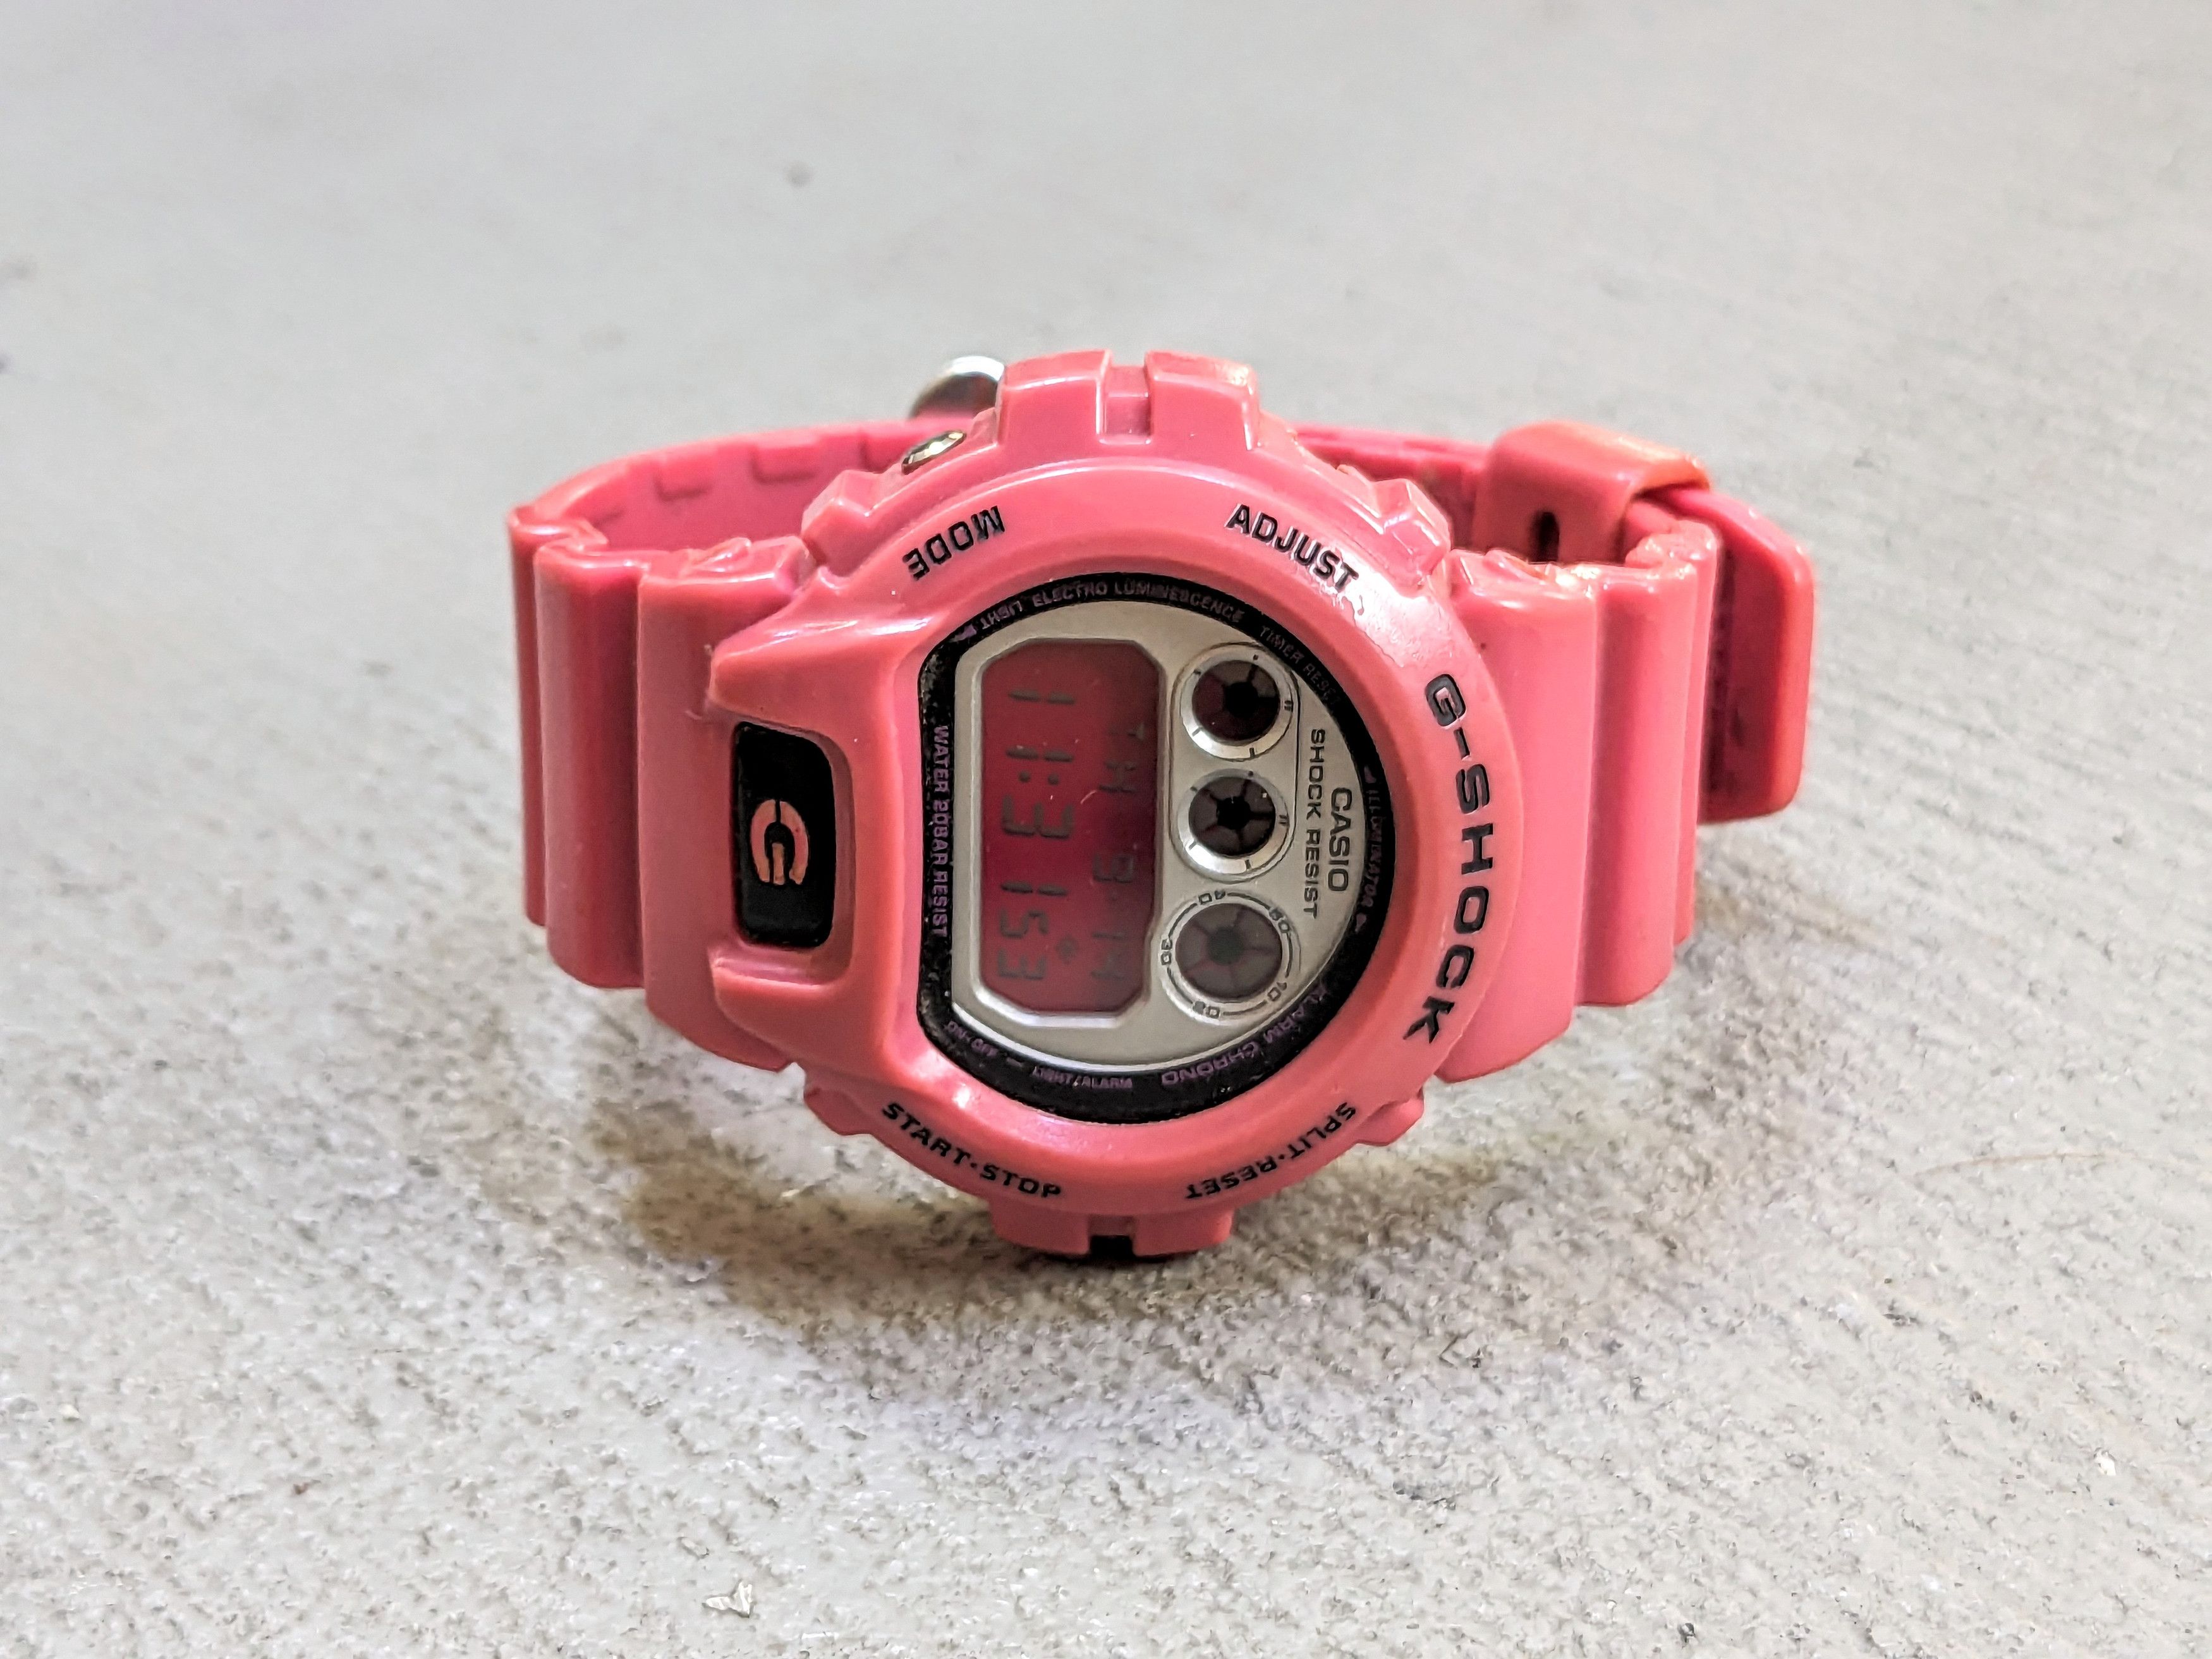 G Shock Casio G-Shock DW6900CS-4JF Pink Watch | Grailed